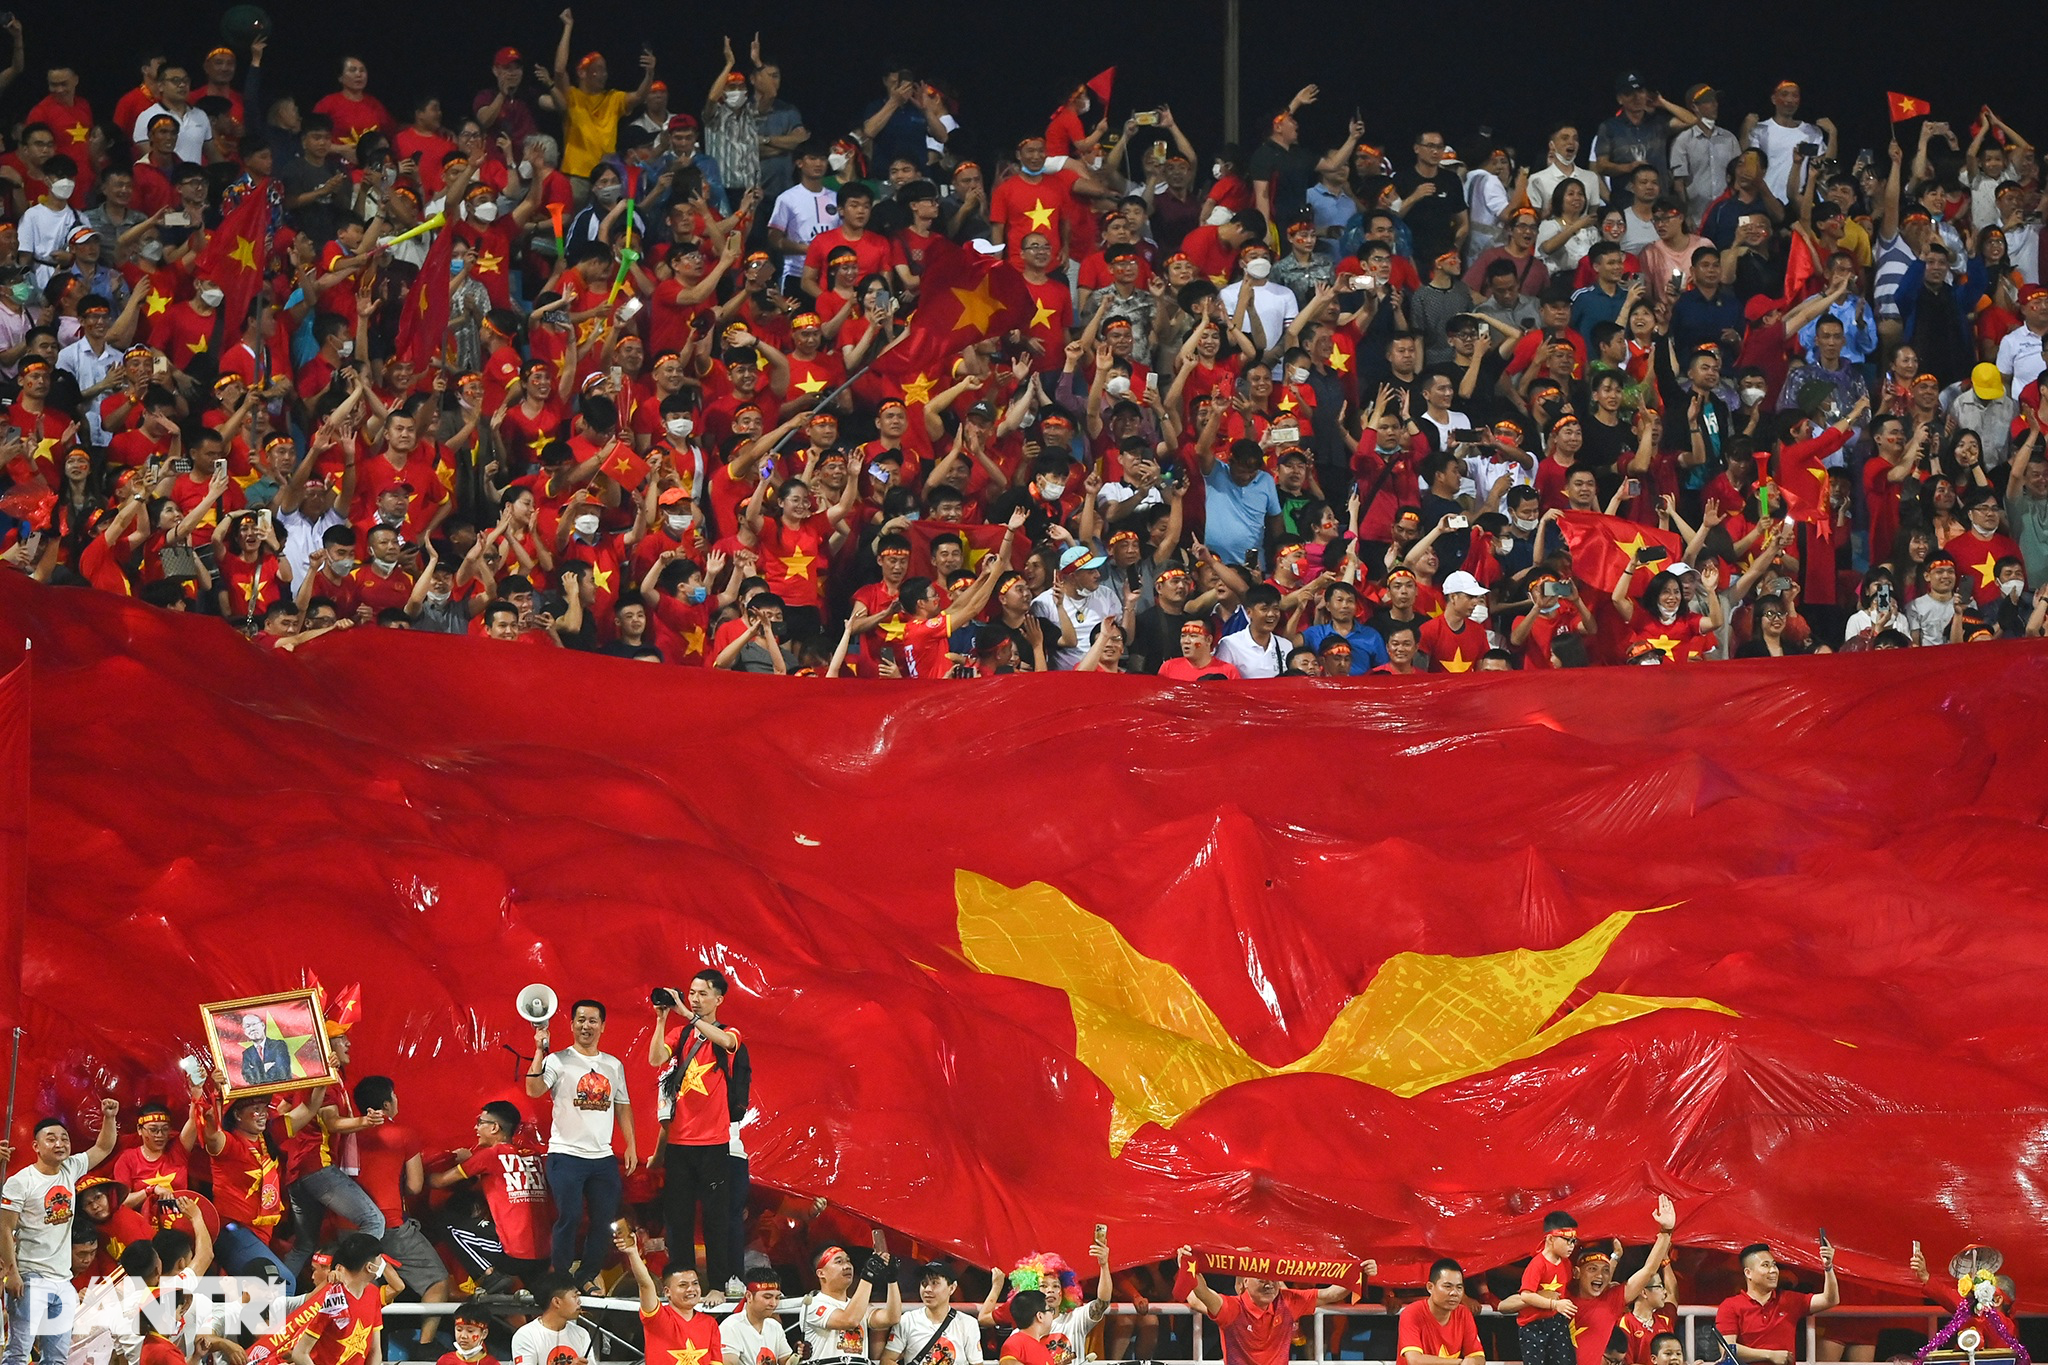 U23 Việt Nam 2024: Sự thành công của đội tuyển U23 Việt Nam đã lan tỏa niềm tự hào và cảm hứng cho hàng triệu người hâm mộ bóng đá tại Việt Nam. Năm 2024, đội tuyển sẽ tiếp tục tham gia các giải đấu quốc tế với mục tiêu vươn lên trở thành một trong những đội tuyển hàng đầu tại châu Á. Hãy cùng theo dõi hình ảnh về sự chuẩn bị và thi đấu của U23 Việt Nam để cổ vũ cho các cầu thủ tài năng này.